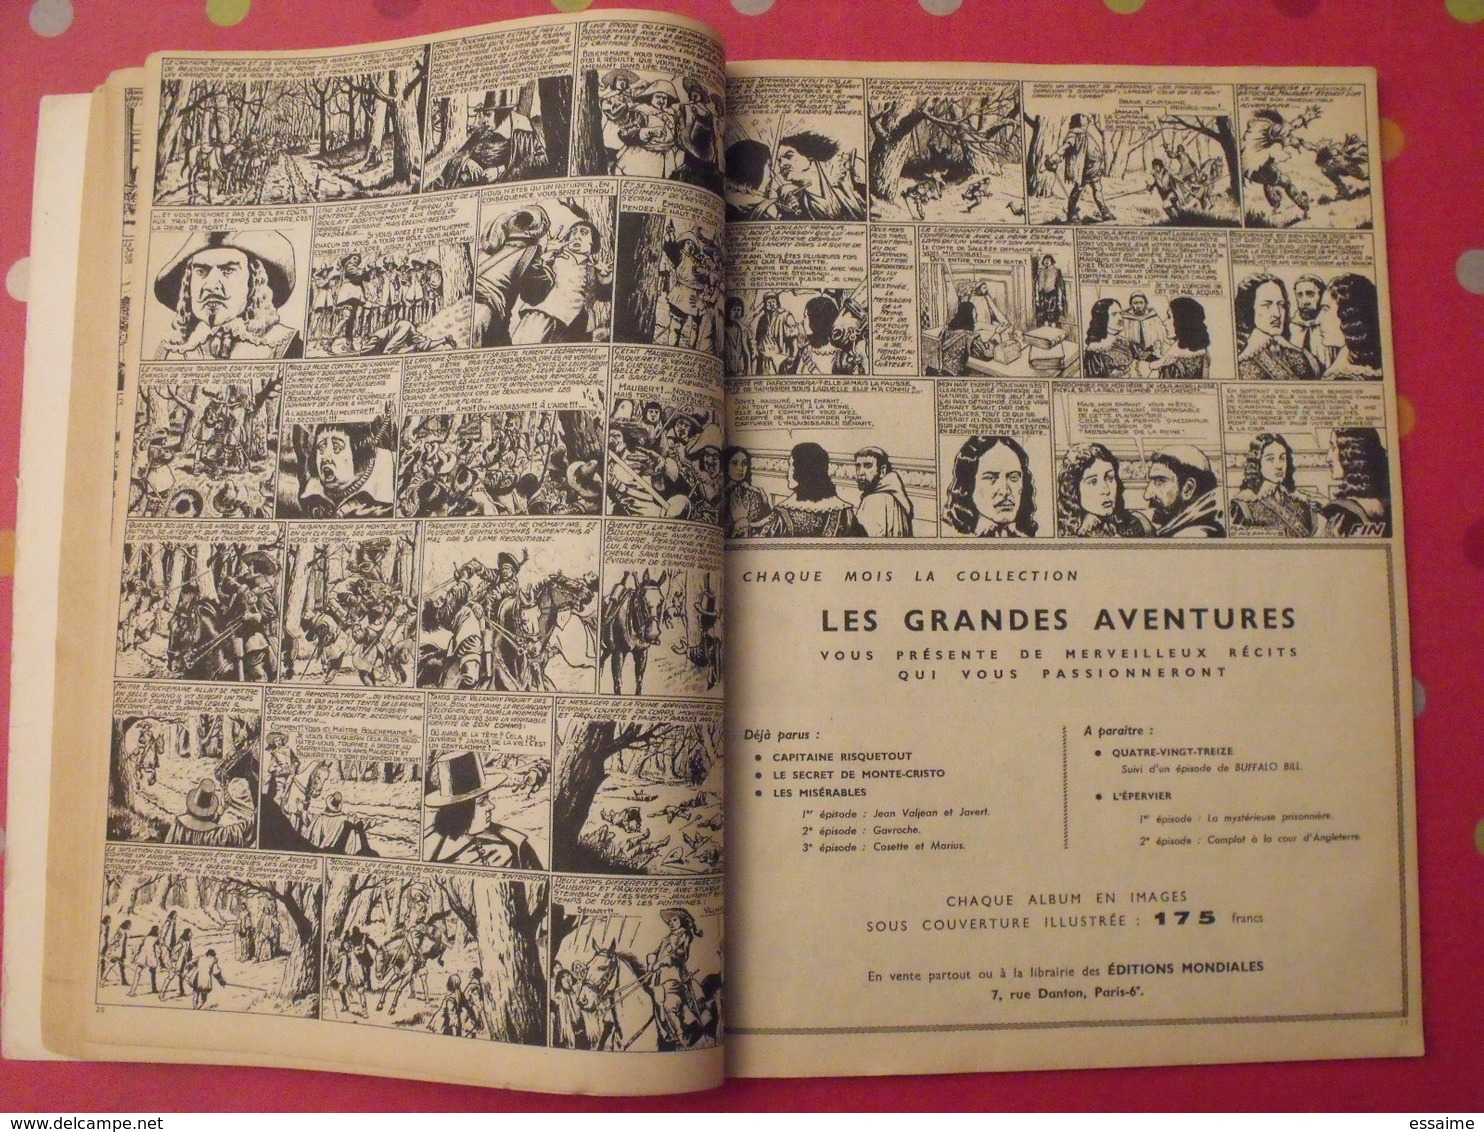 Les misérables, Cosette et Marius (Victor Hugo) illustré par René Giffey. + cazanave + vera (jesse james) + souriau